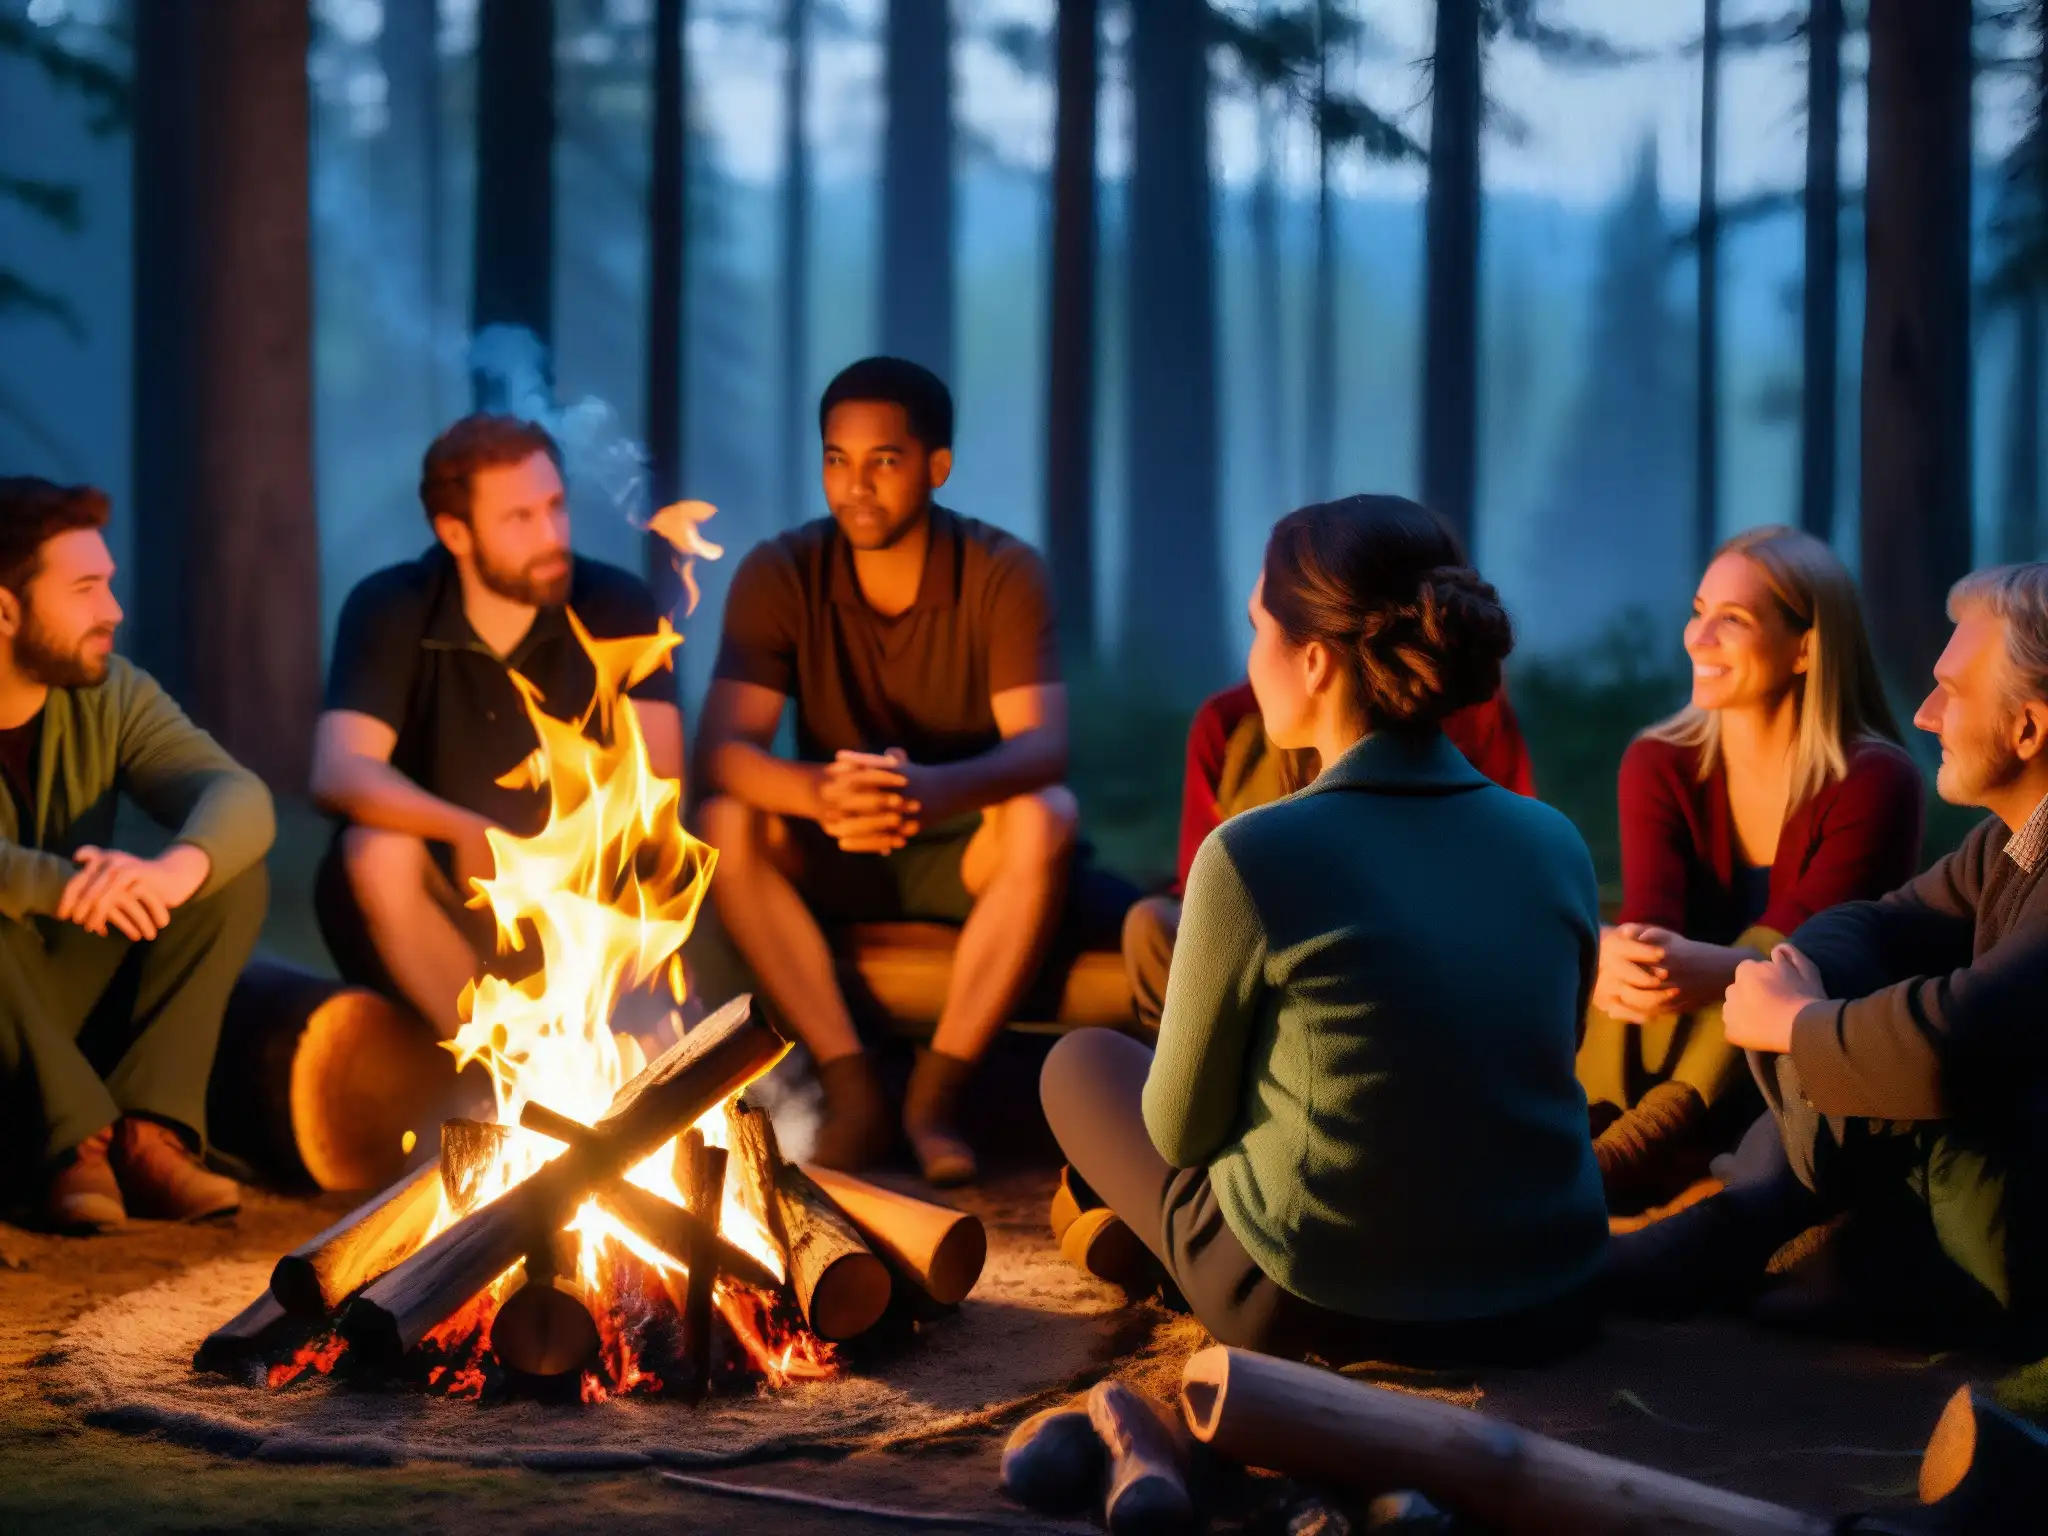 Un grupo escucha atentamente a un narrador junto al fuego en un bosque, evocando la 'Percepción de riesgos en leyendas urbanas'